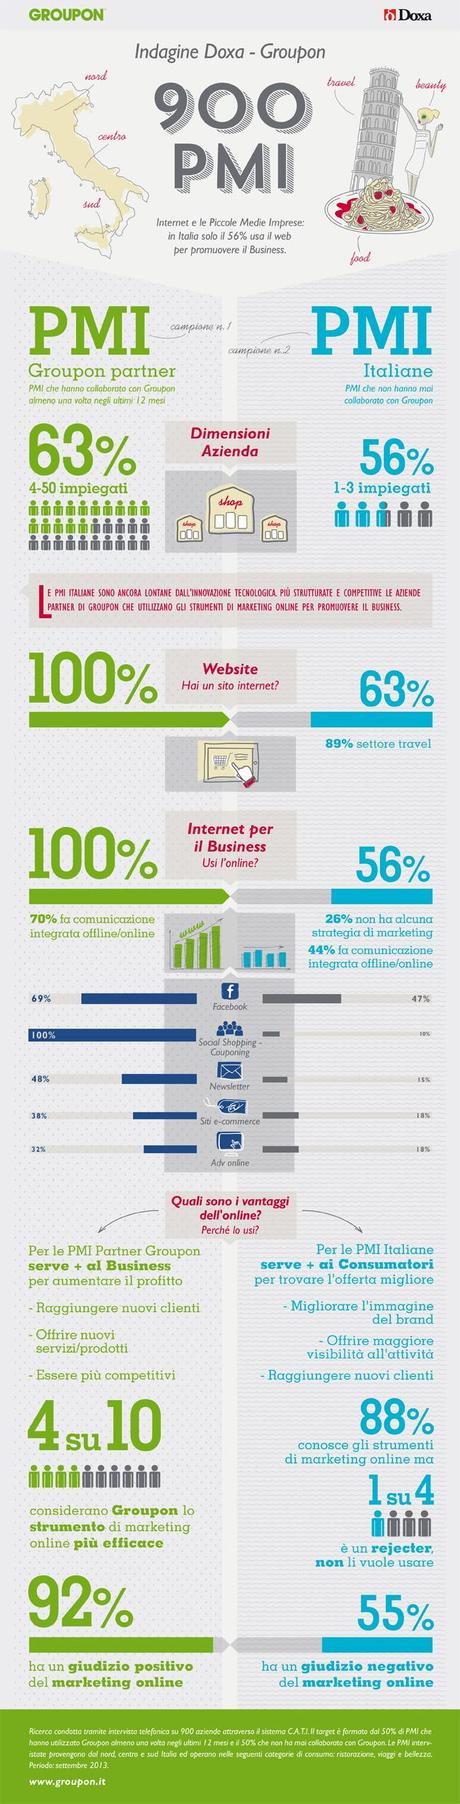 Solo poco più della metà delle PMI usa il Web per il proprio business